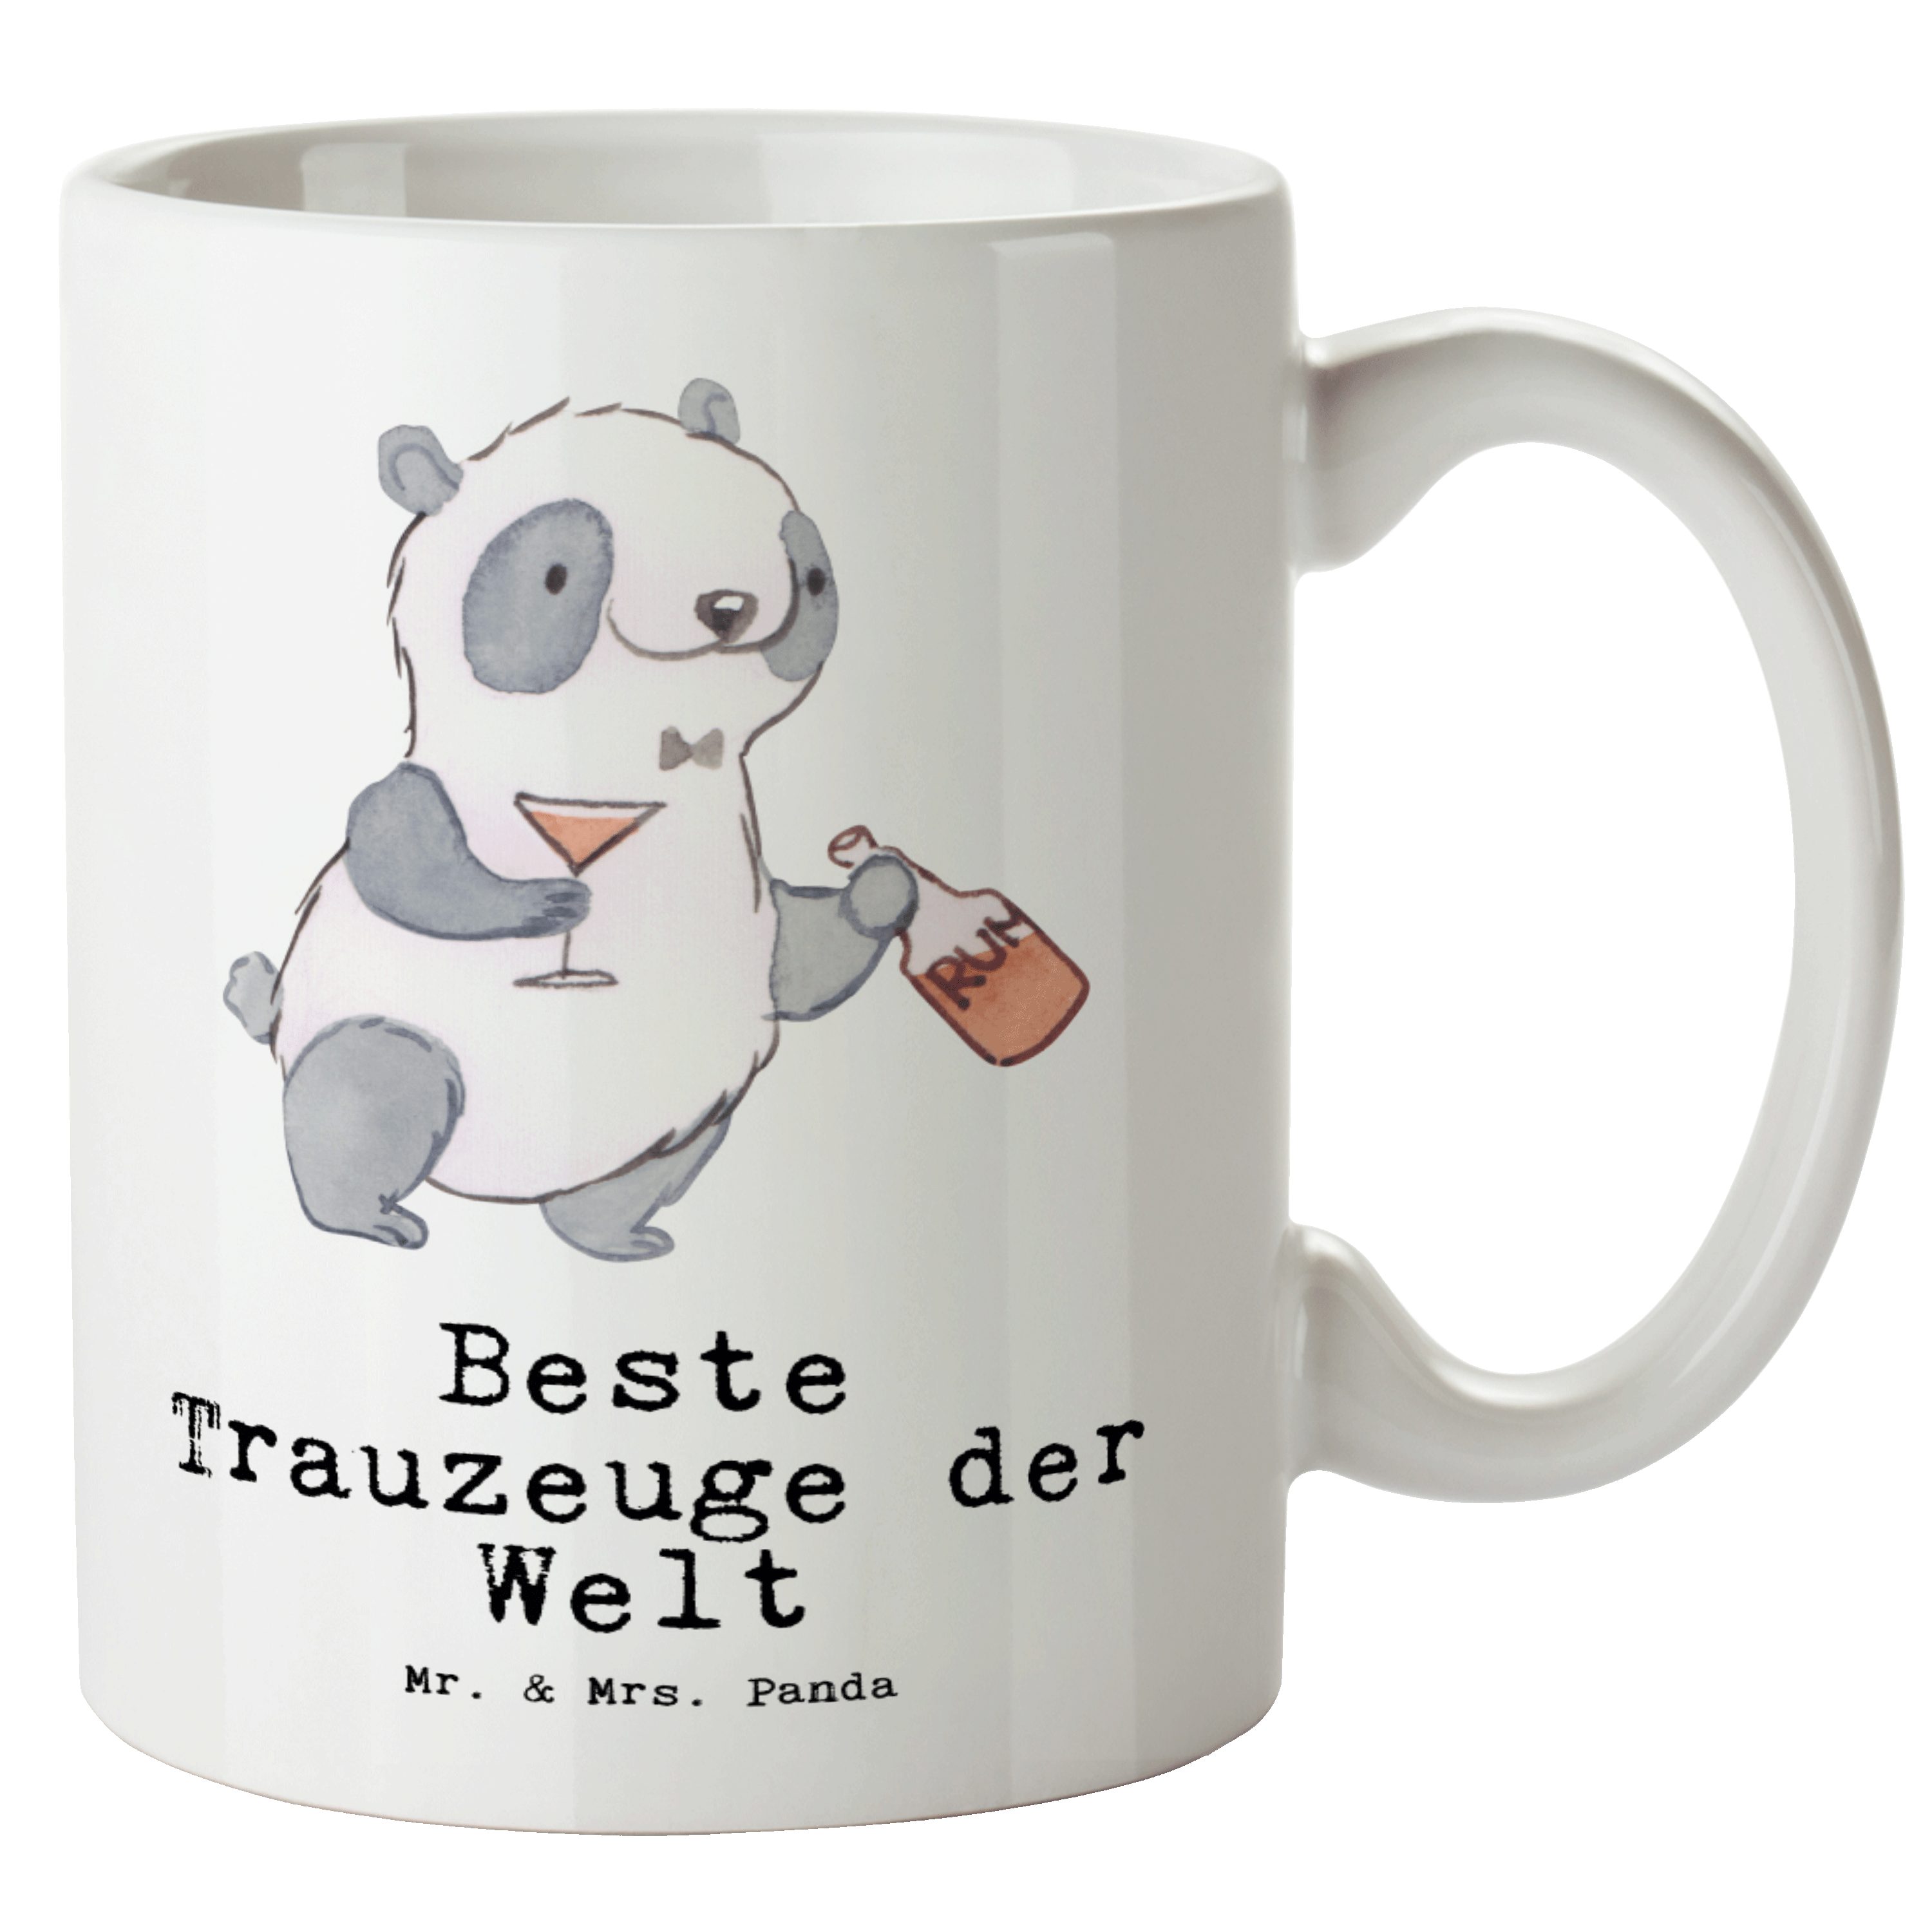 Mr. & Mrs. Panda Tasse Panda Bester Trauzeuge der Welt - Weiß - Geschenk, XL Teetasse, Stand, XL Tasse Keramik